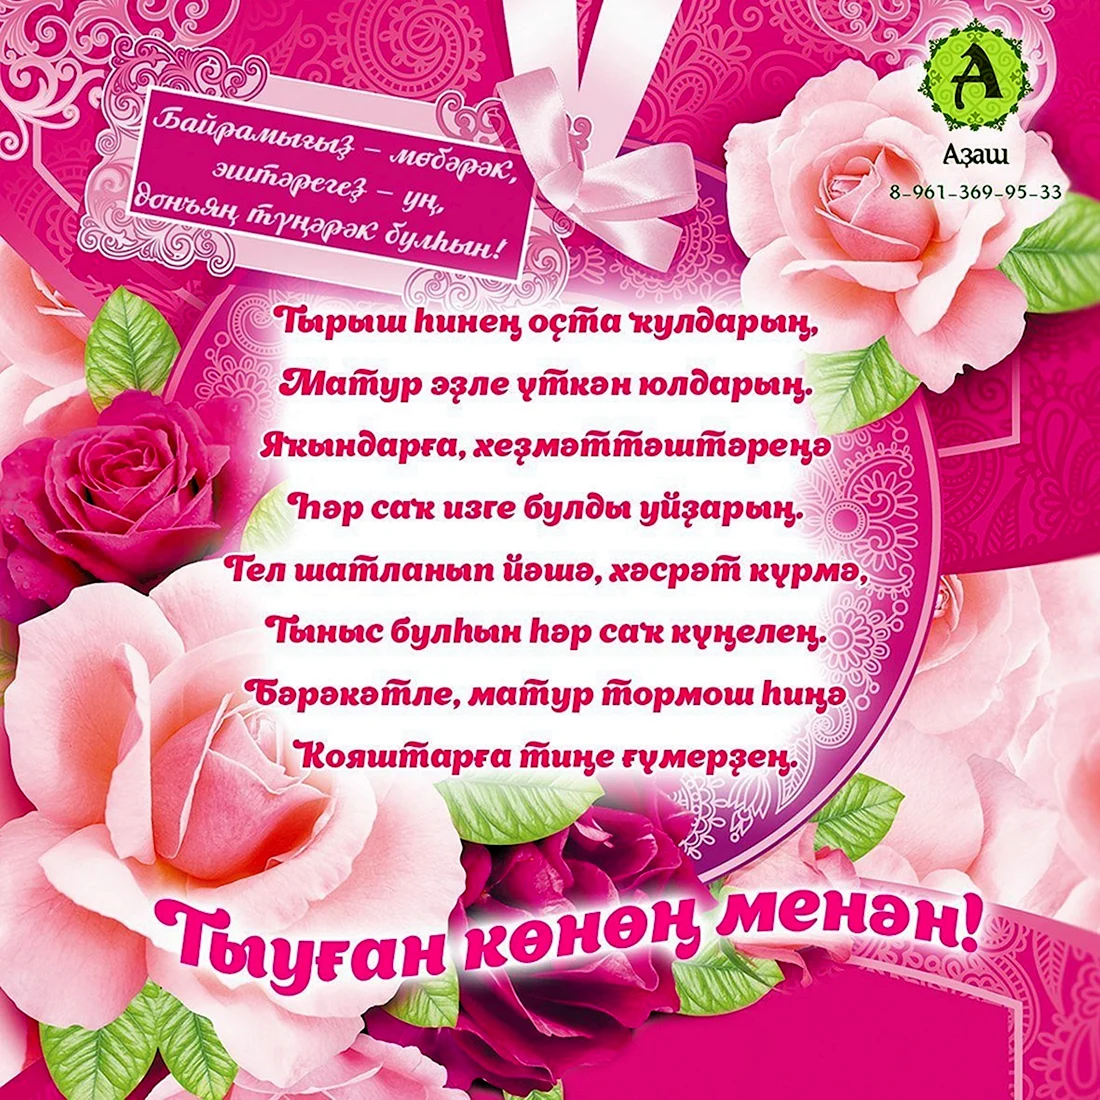 УЗБЕКСКИЕ открытки с днем рождения с пожеланиями на узбекском языке